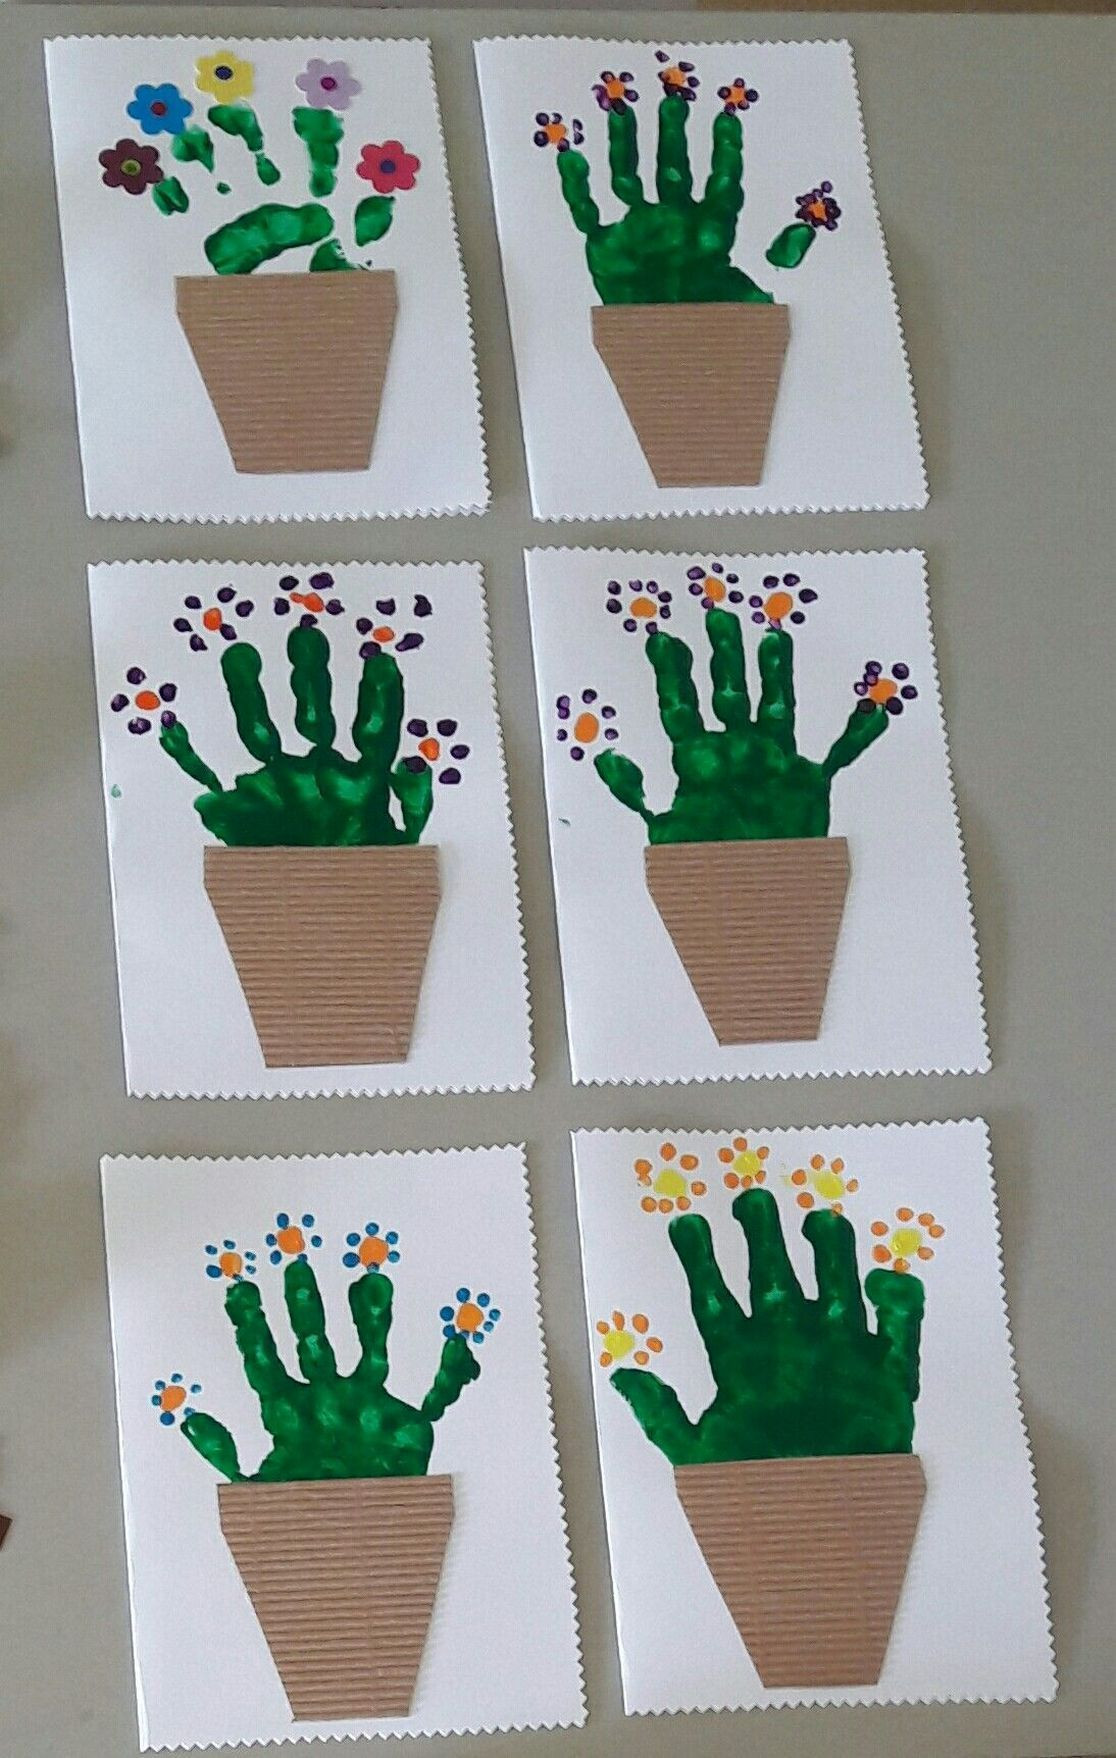 Creative Activities For Preschoolers
 Spring crafts preschool creative art ideas 34